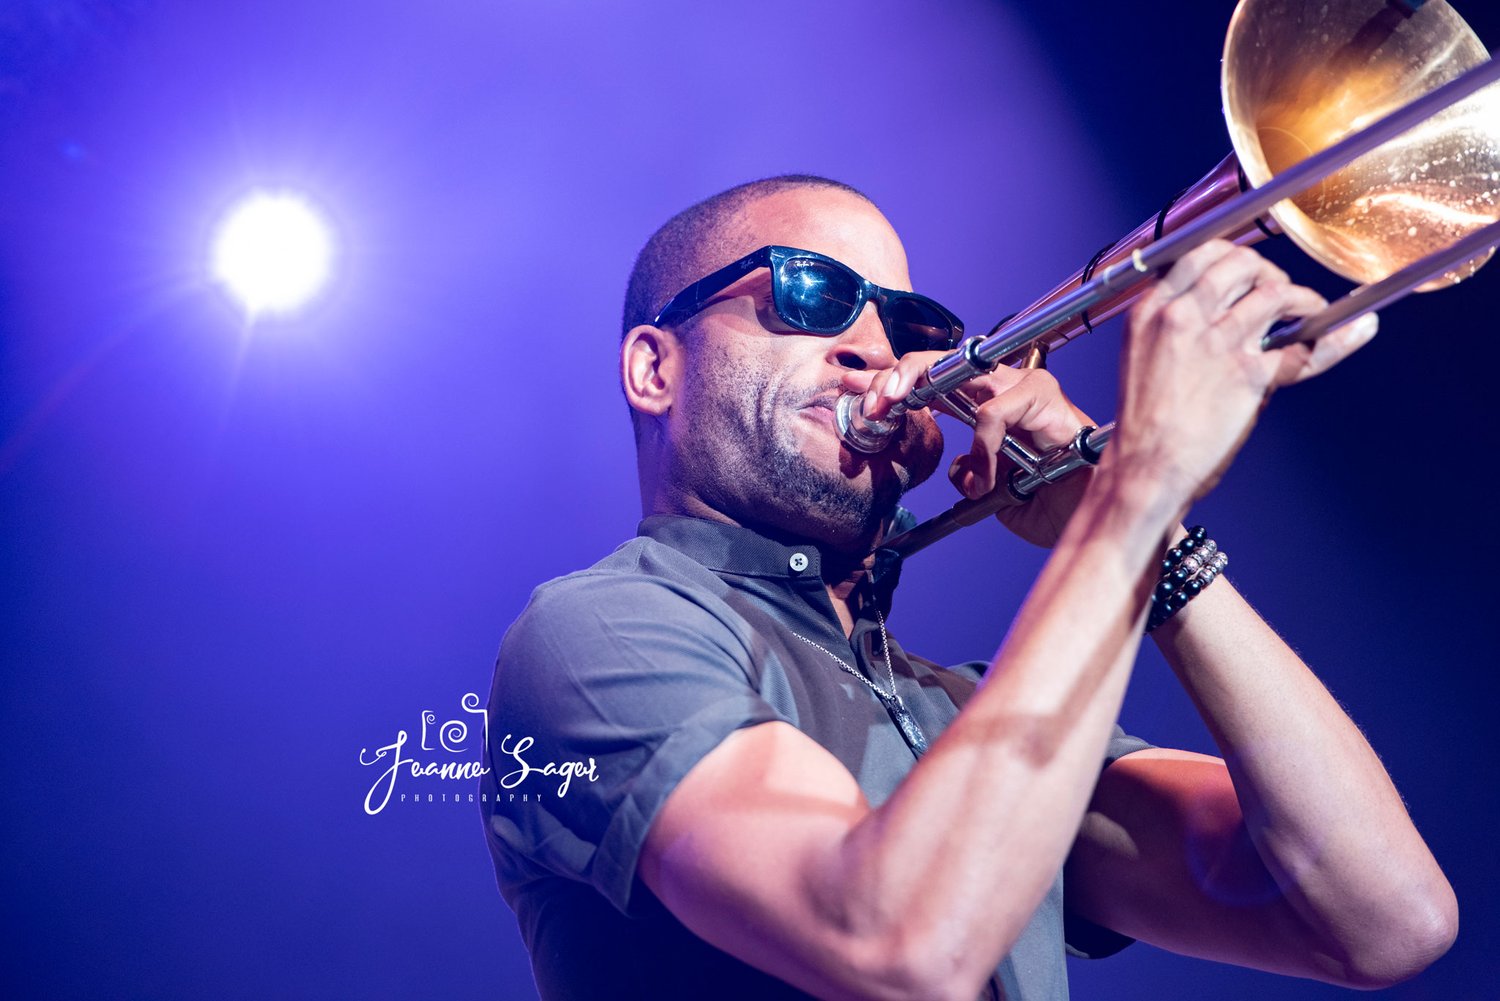 jazz musician Trombone Shorty plays a trombone in front of a purple backdrop